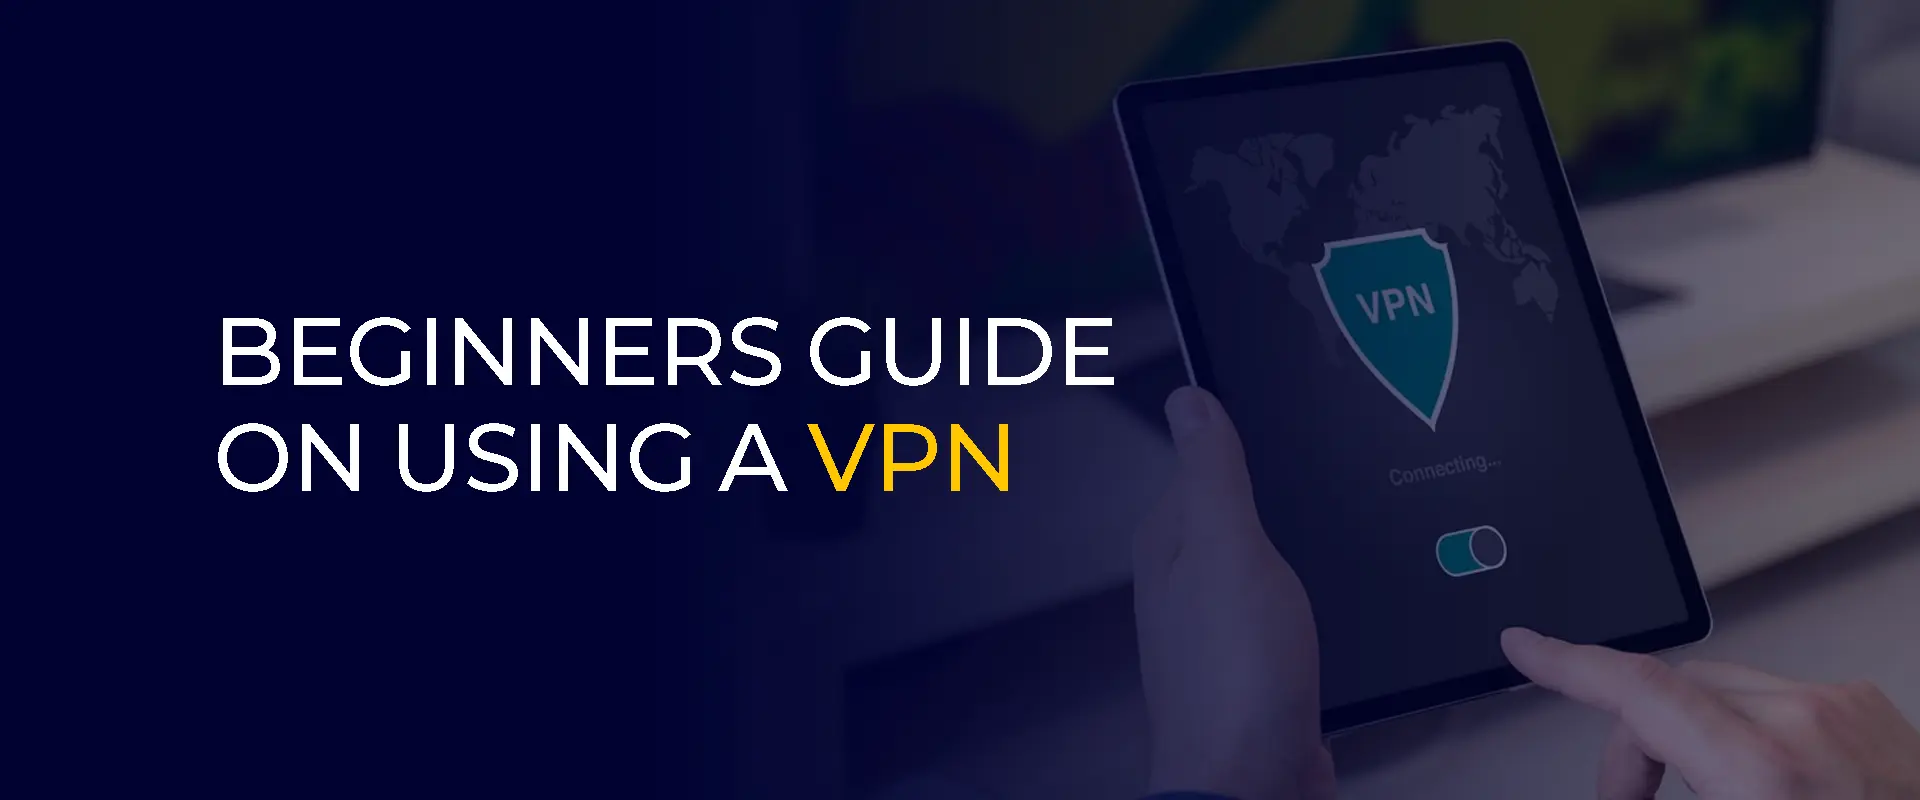 VPN の使用に関する初心者向けガイド